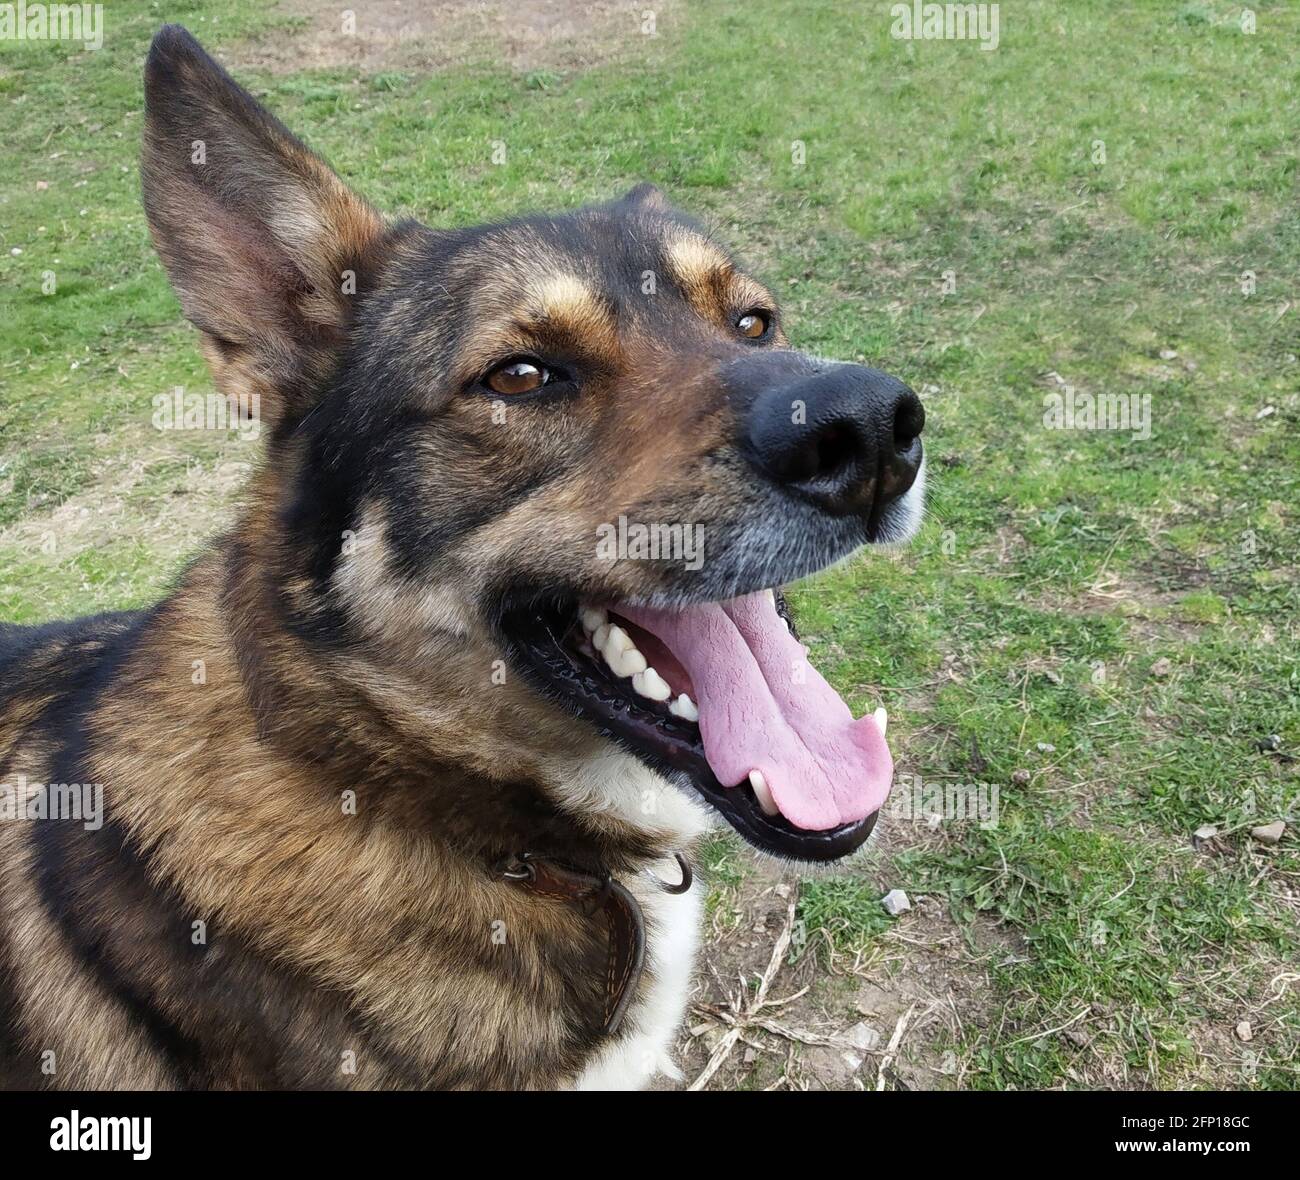 Porträt des Hundes laika auf dem Hintergrund von grün Gras.Haustier mit offenem Mund Nahaufnahme Stockfoto